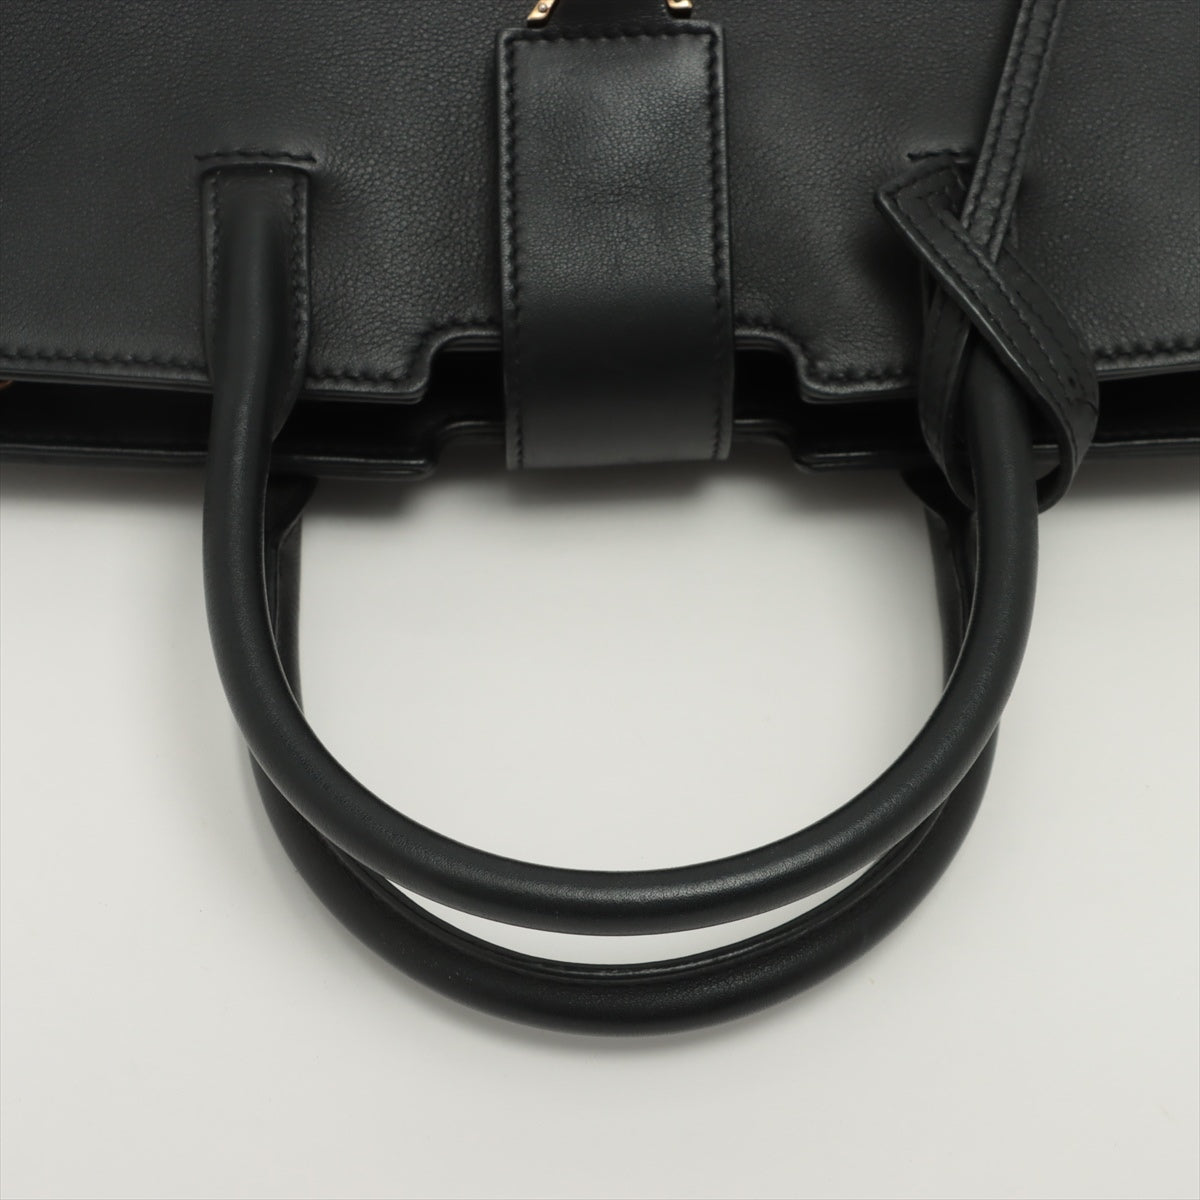 Saint Laurent Paris Downtown Cabas Leather & Suede 2way handbag Black 436834